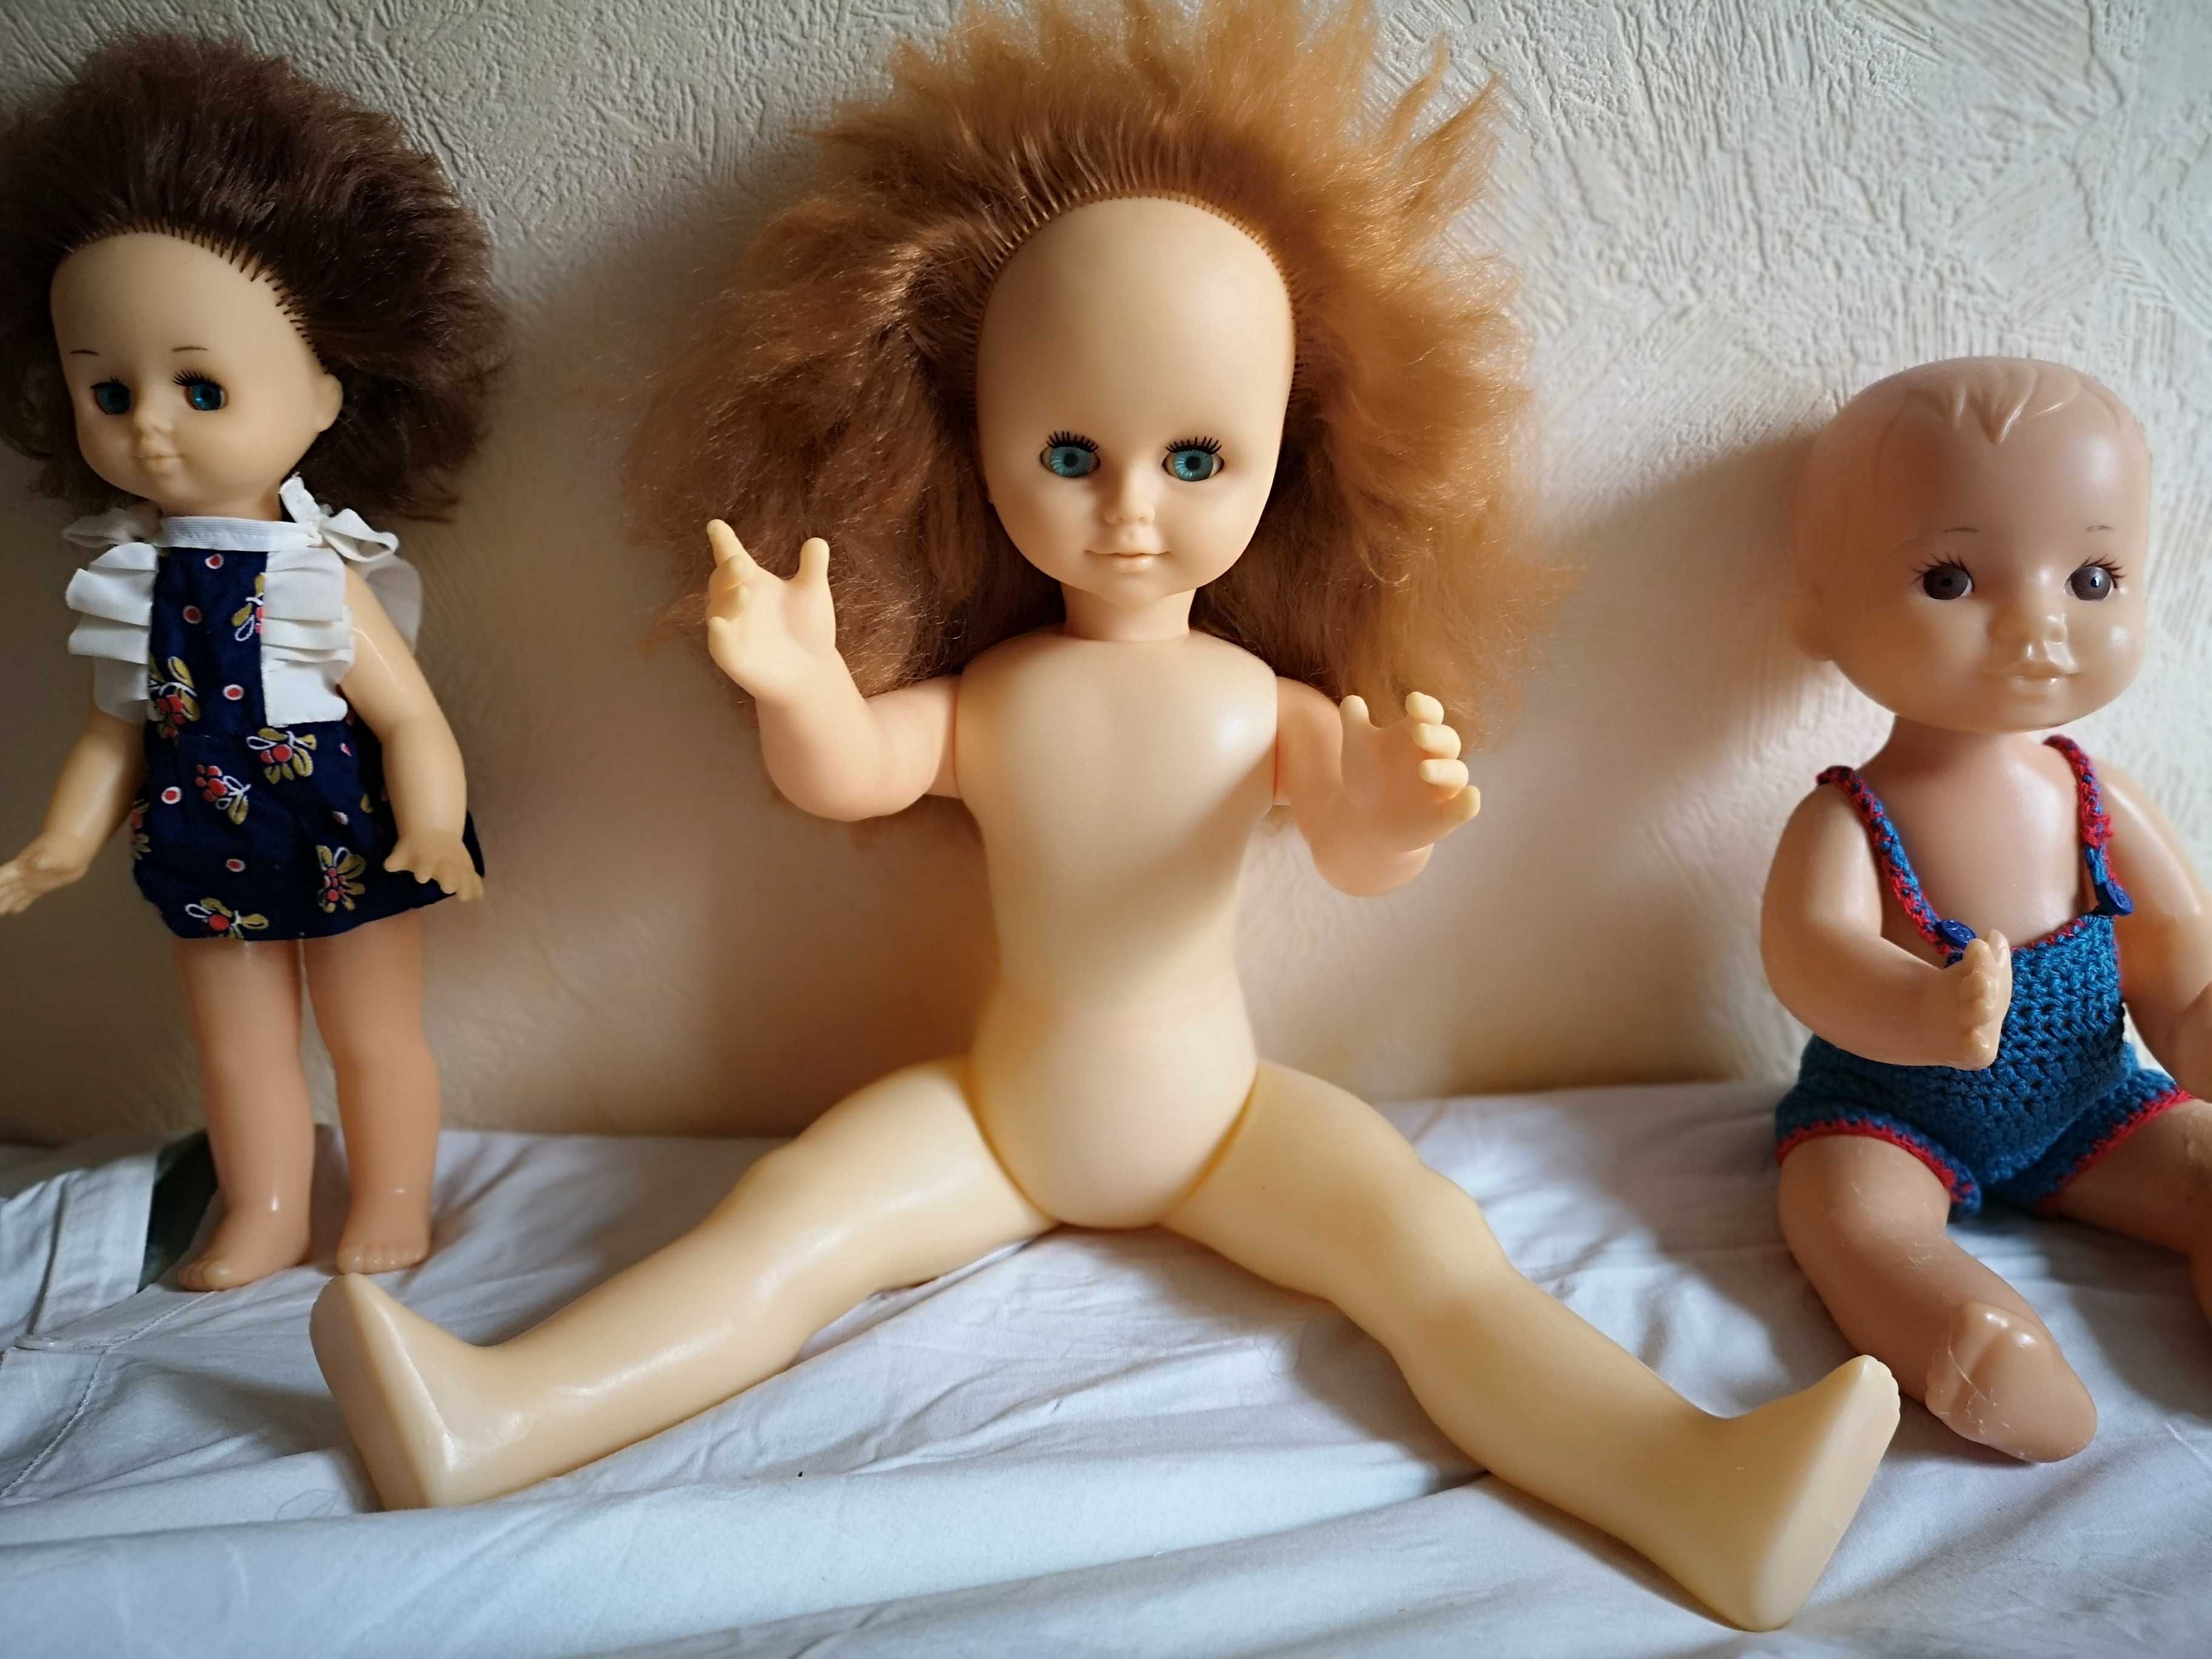 Редкая огромная винтажная кукла времён СССР, рост 60см